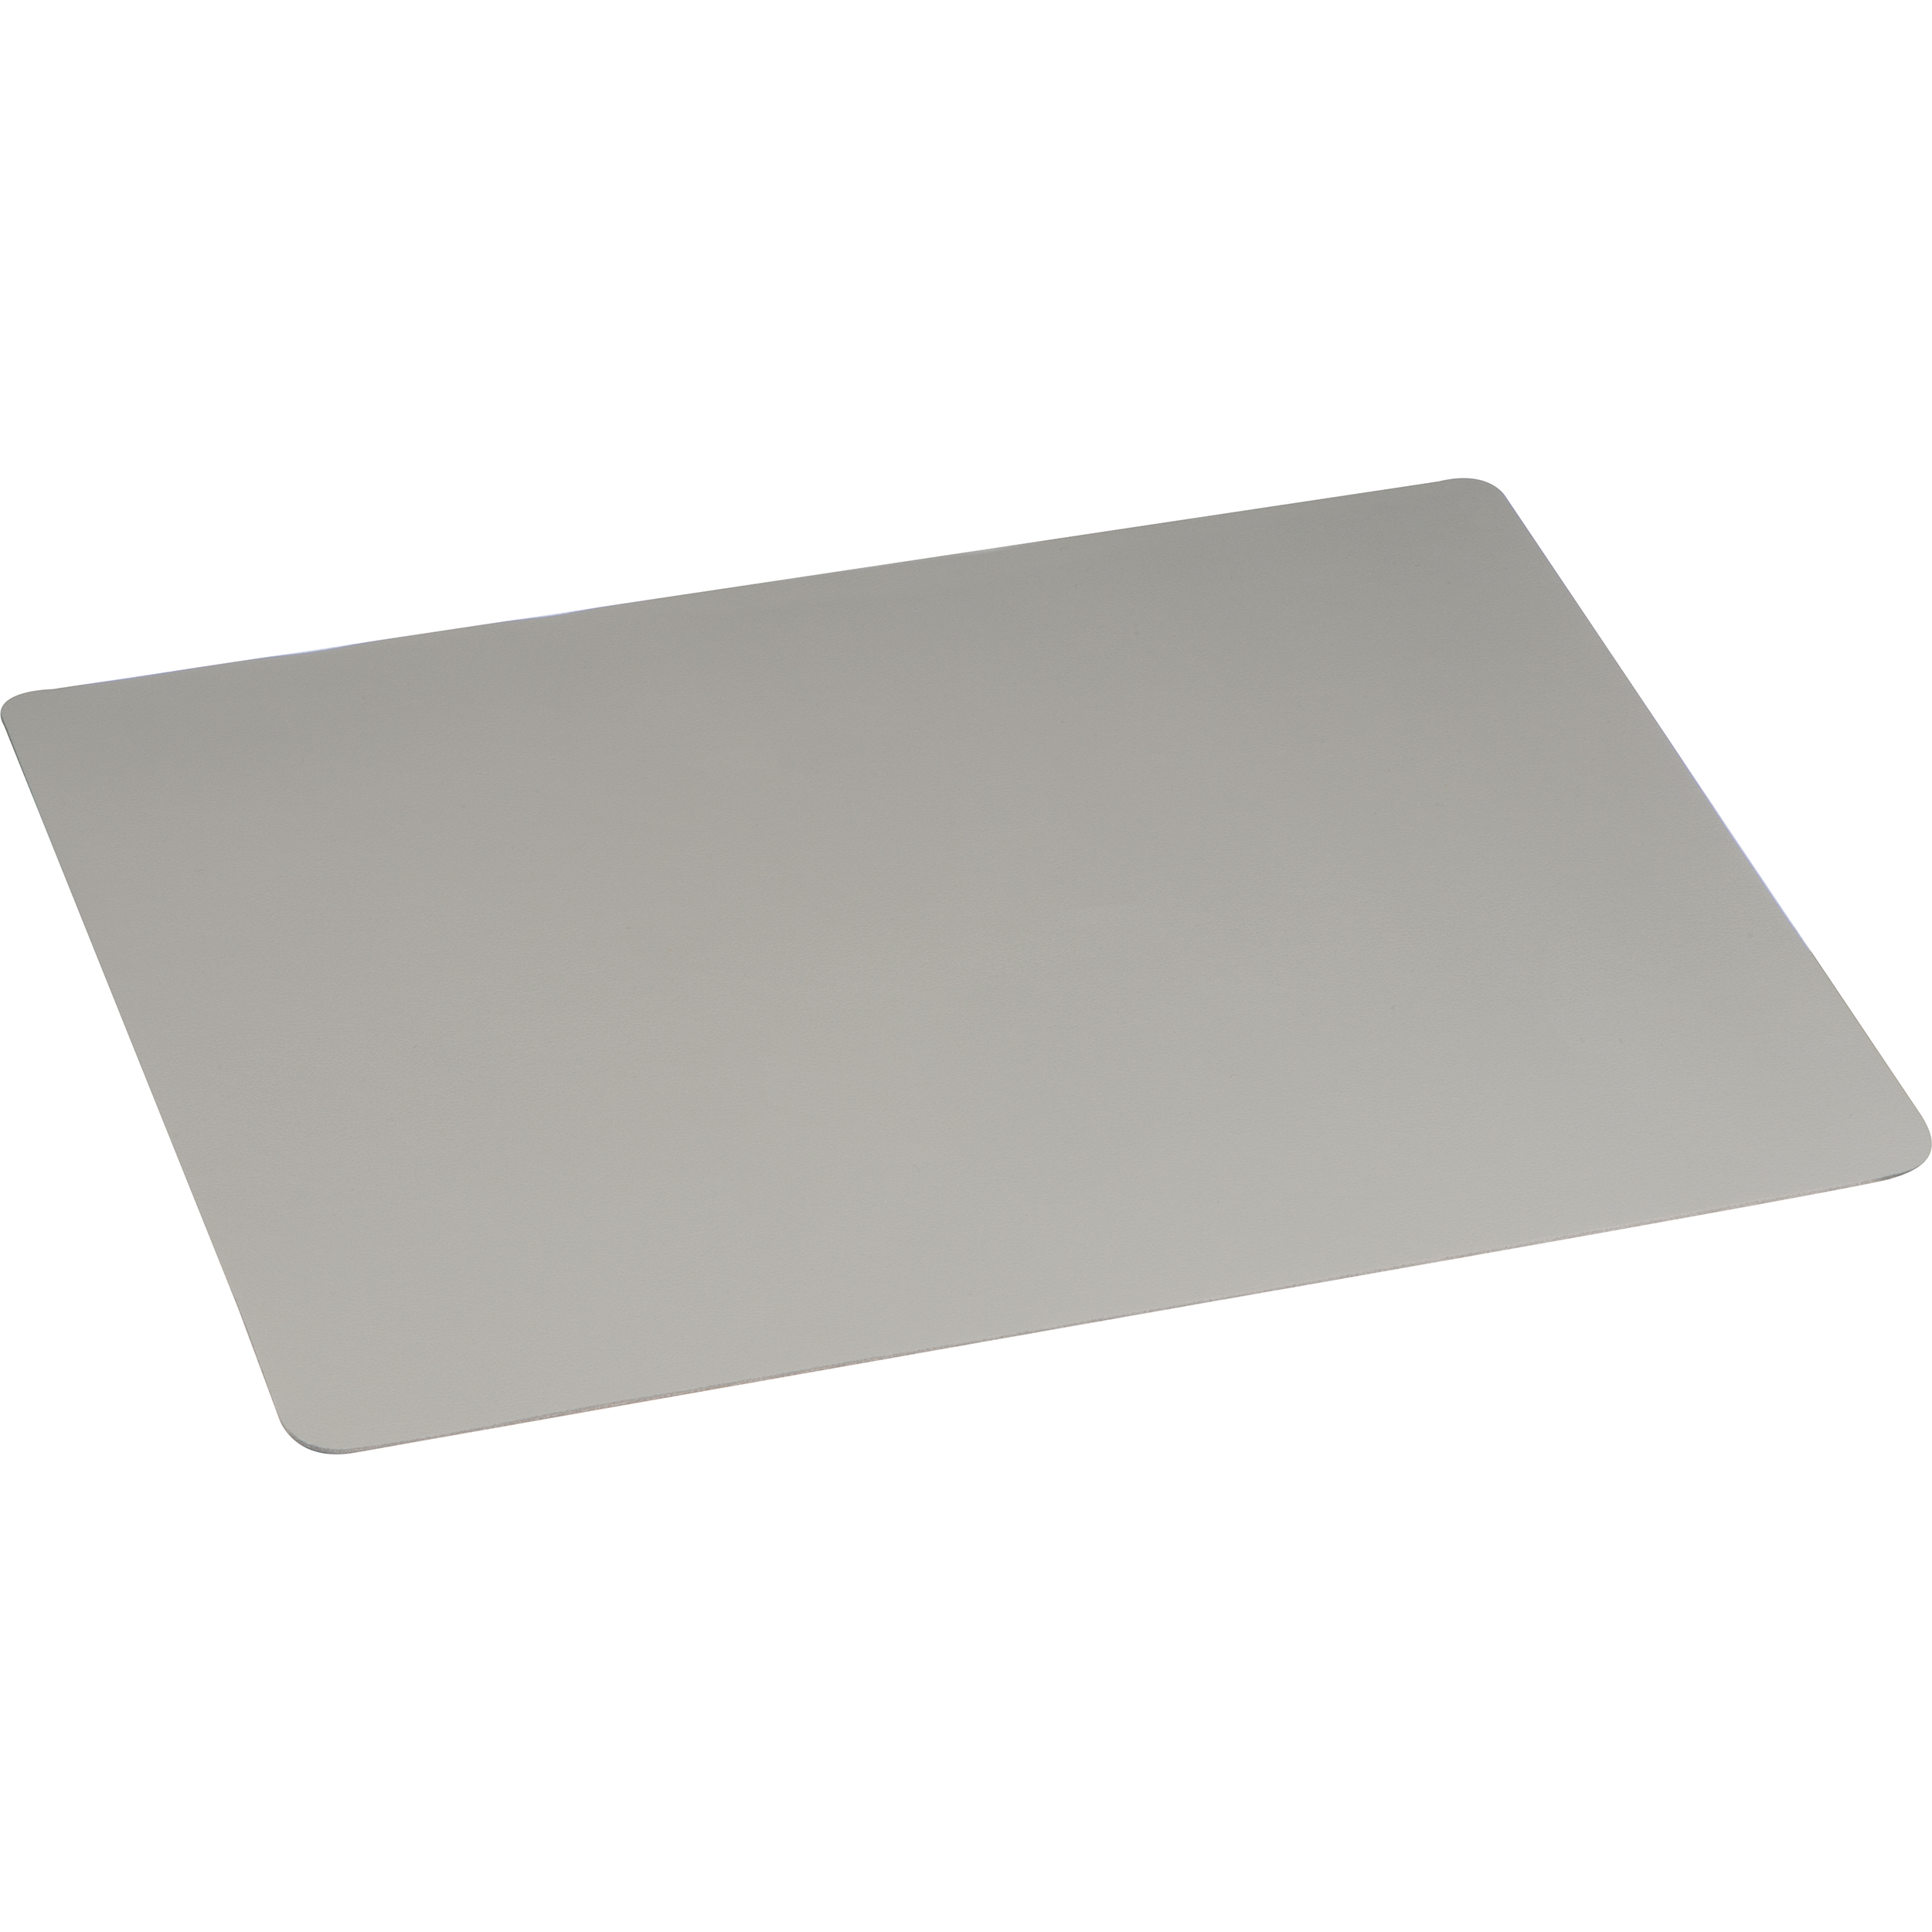 PVC table mat